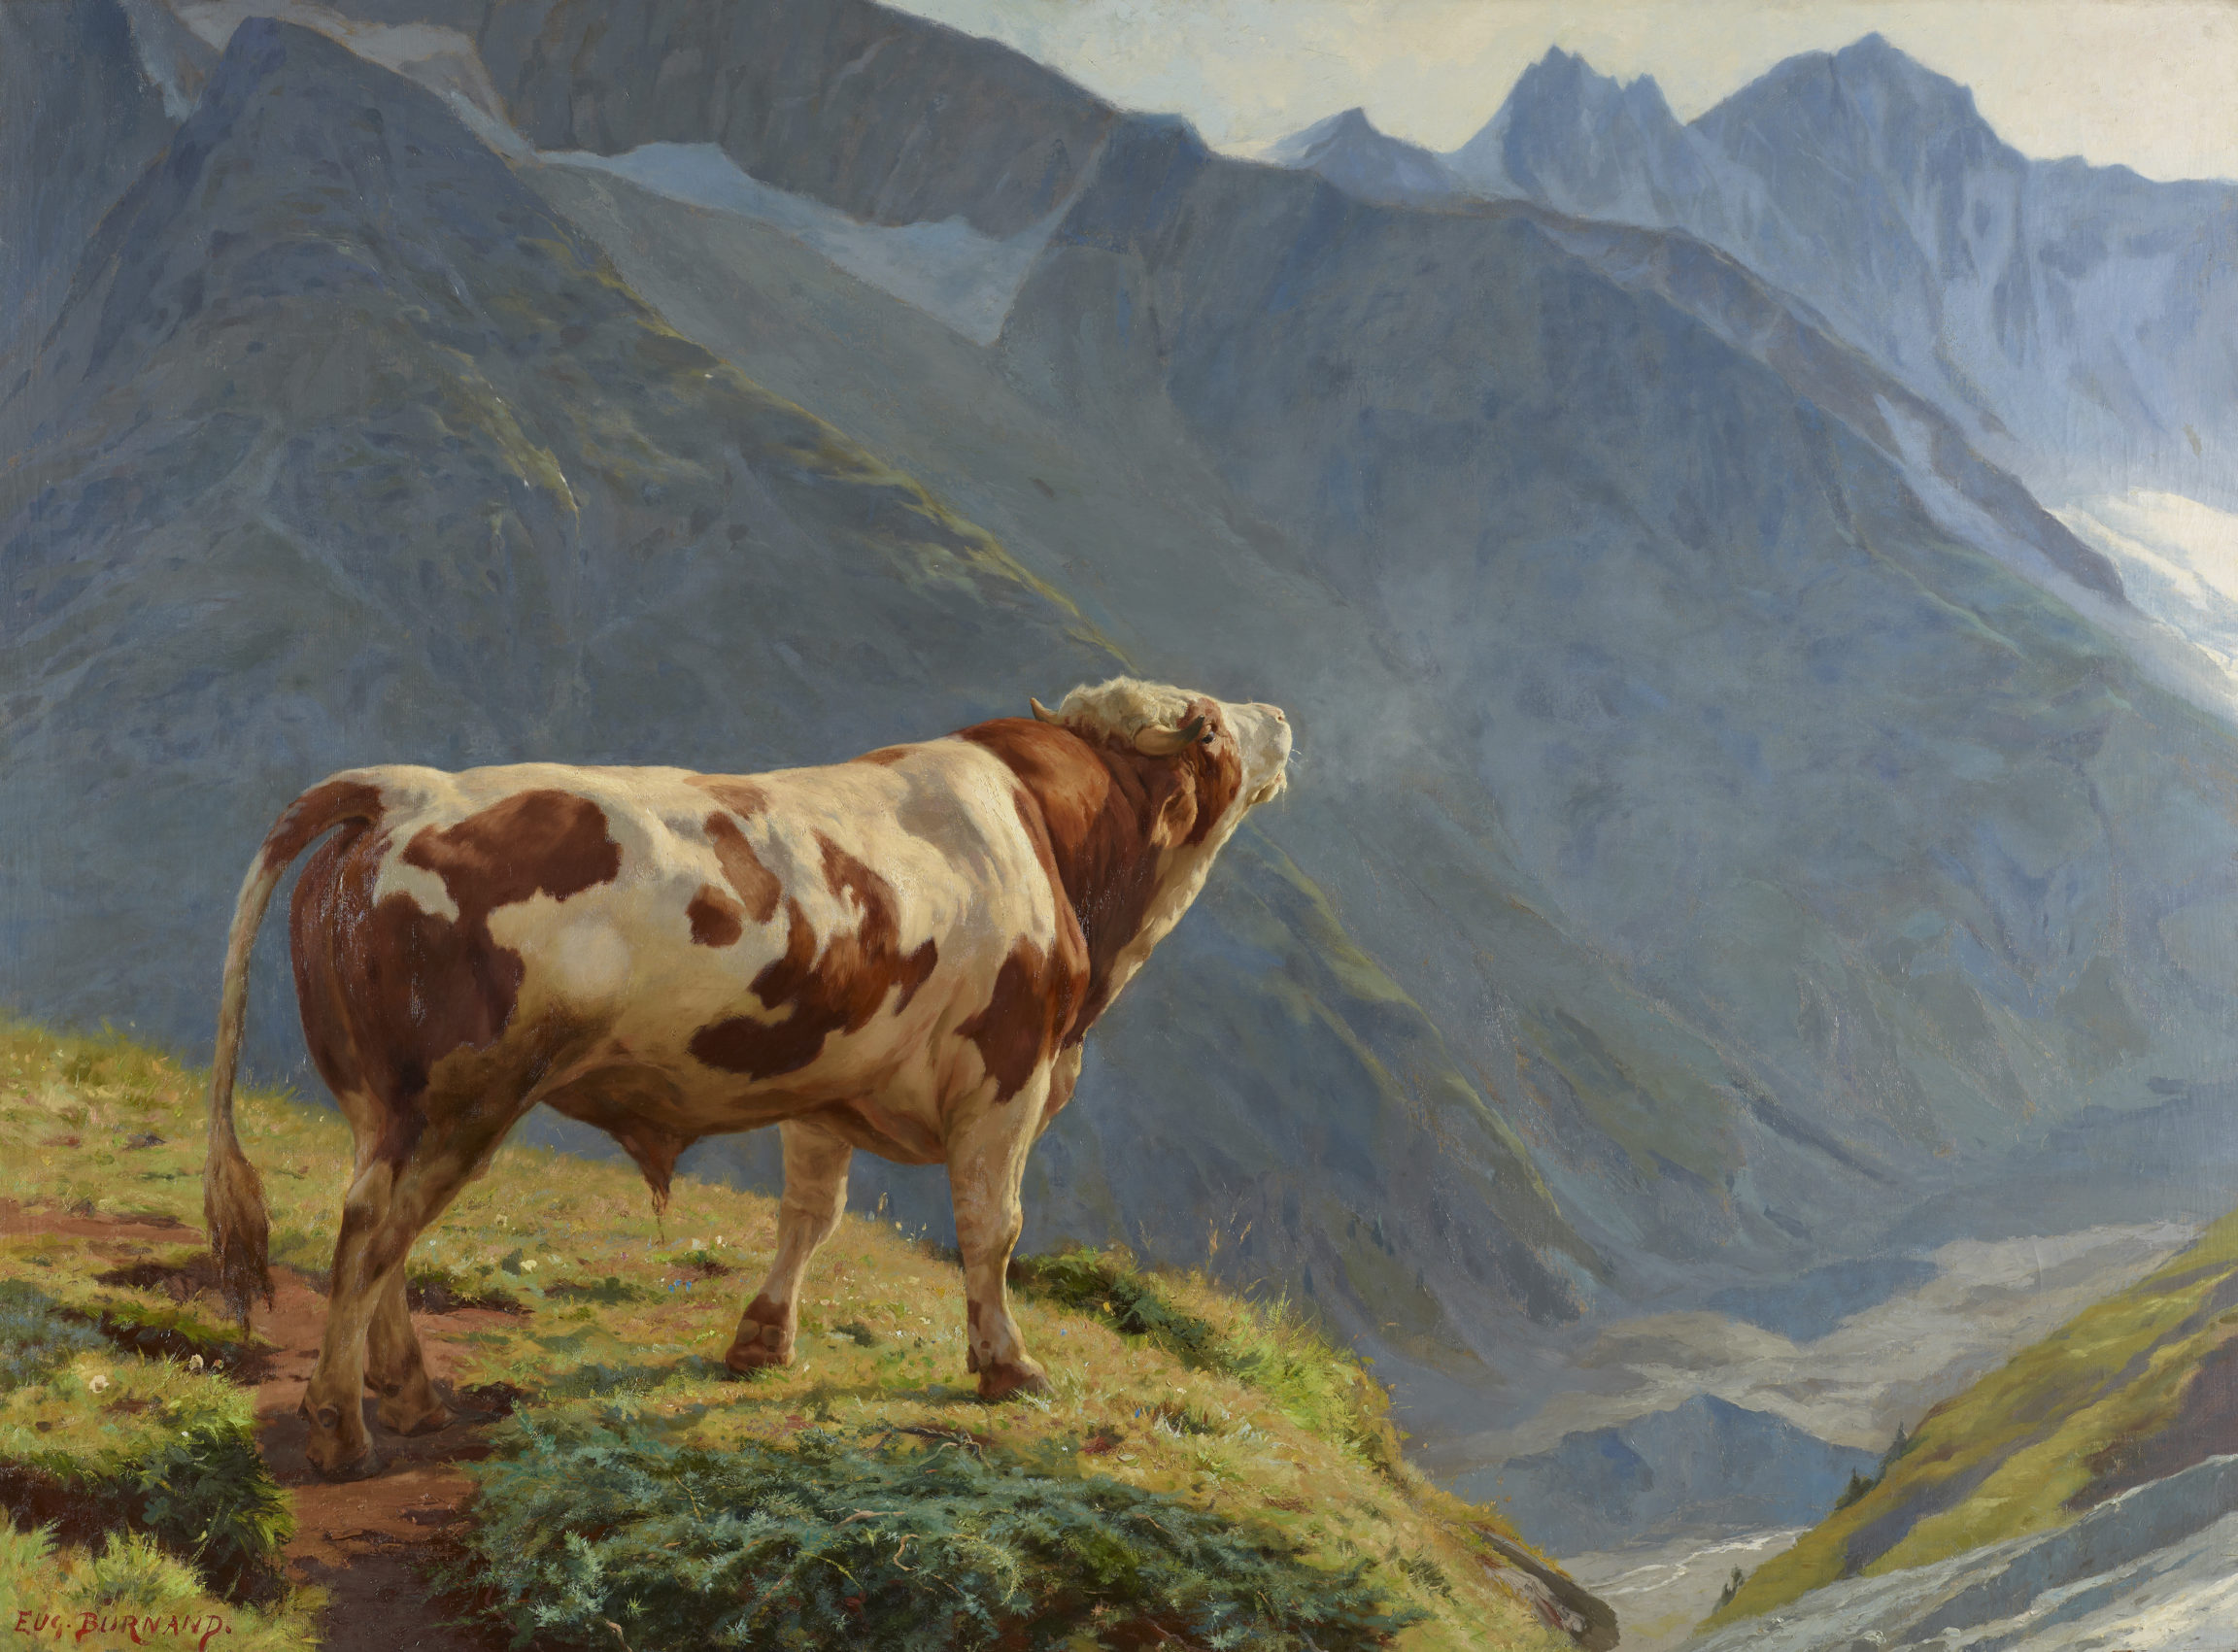 Eugène Burnand, Taureau dans les Alpes, 1884